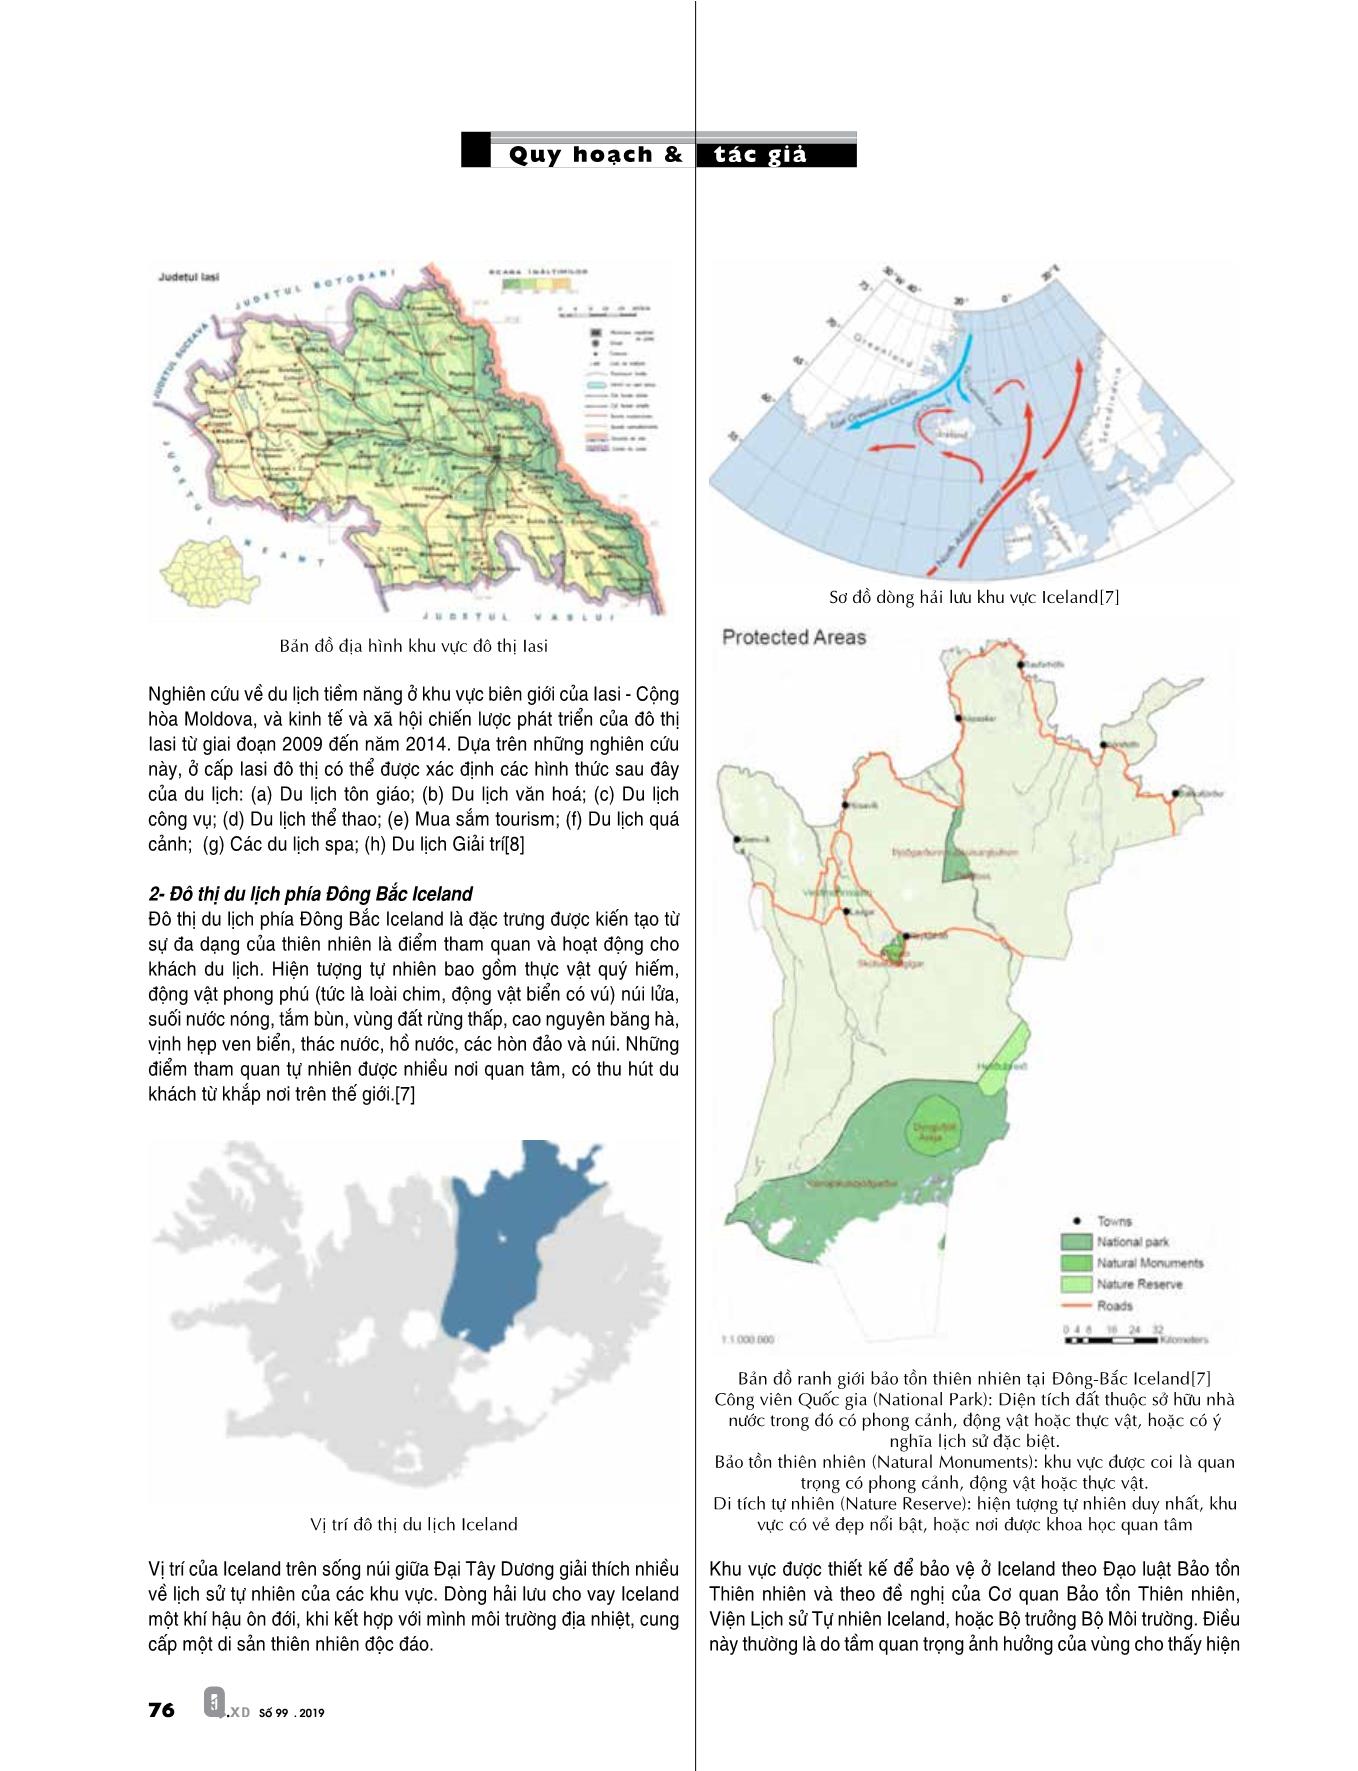 Nhận diện và khai thác hợp lý các điều kiện tự nhiên trong quy hoạch đô thị du lịch Việt Nam trang 3